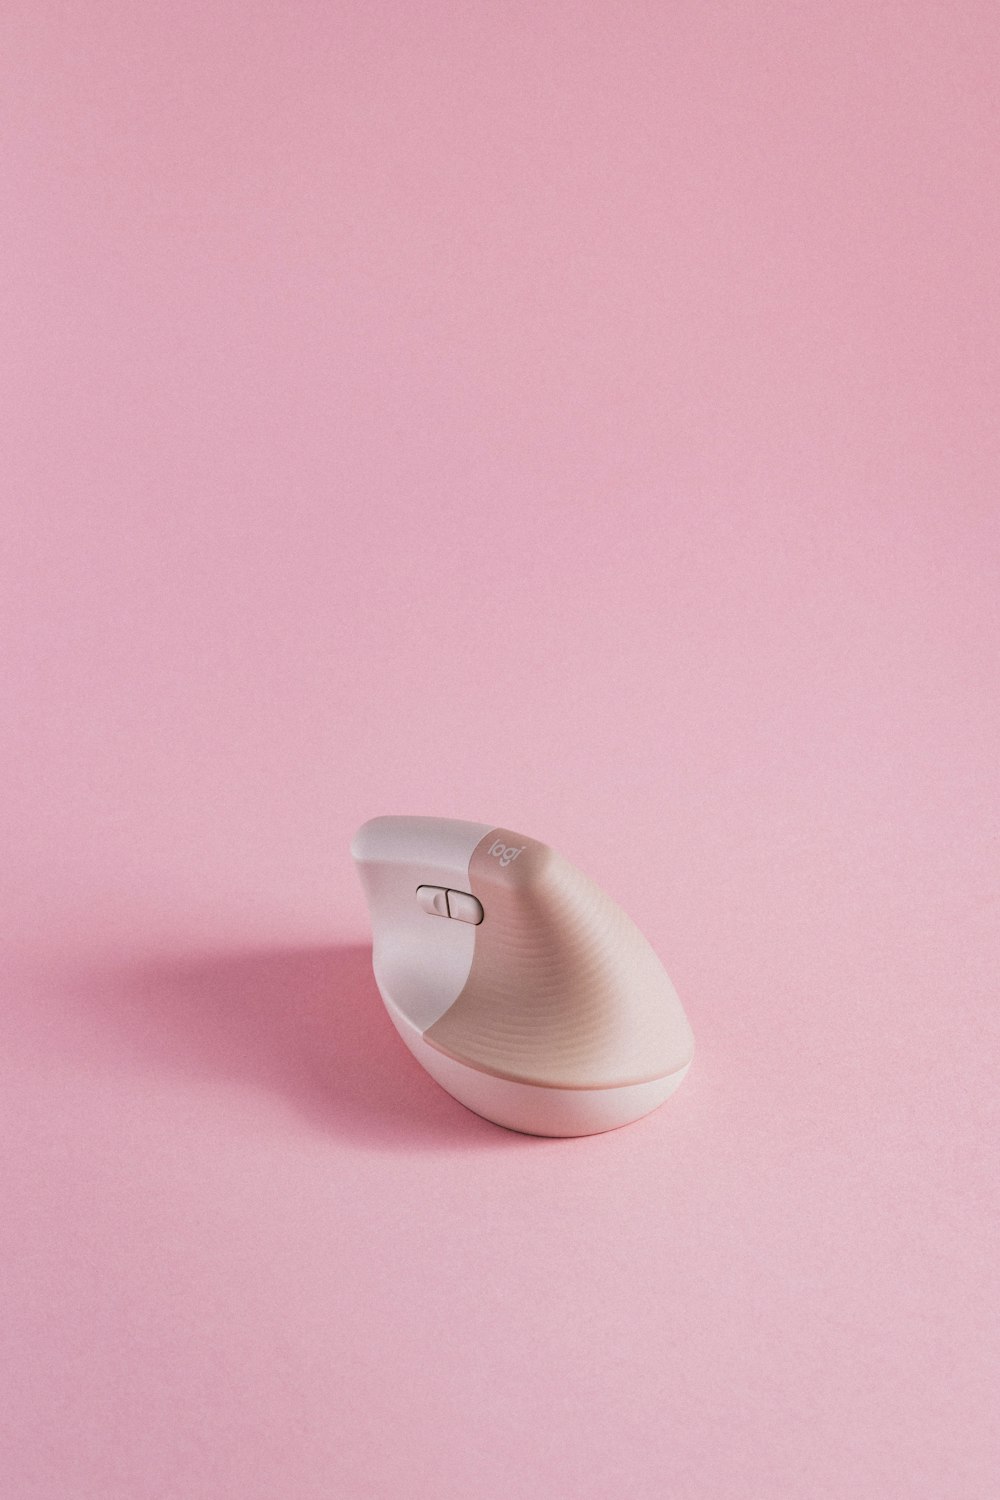 um mouse de computador sentado em cima de uma superfície rosa